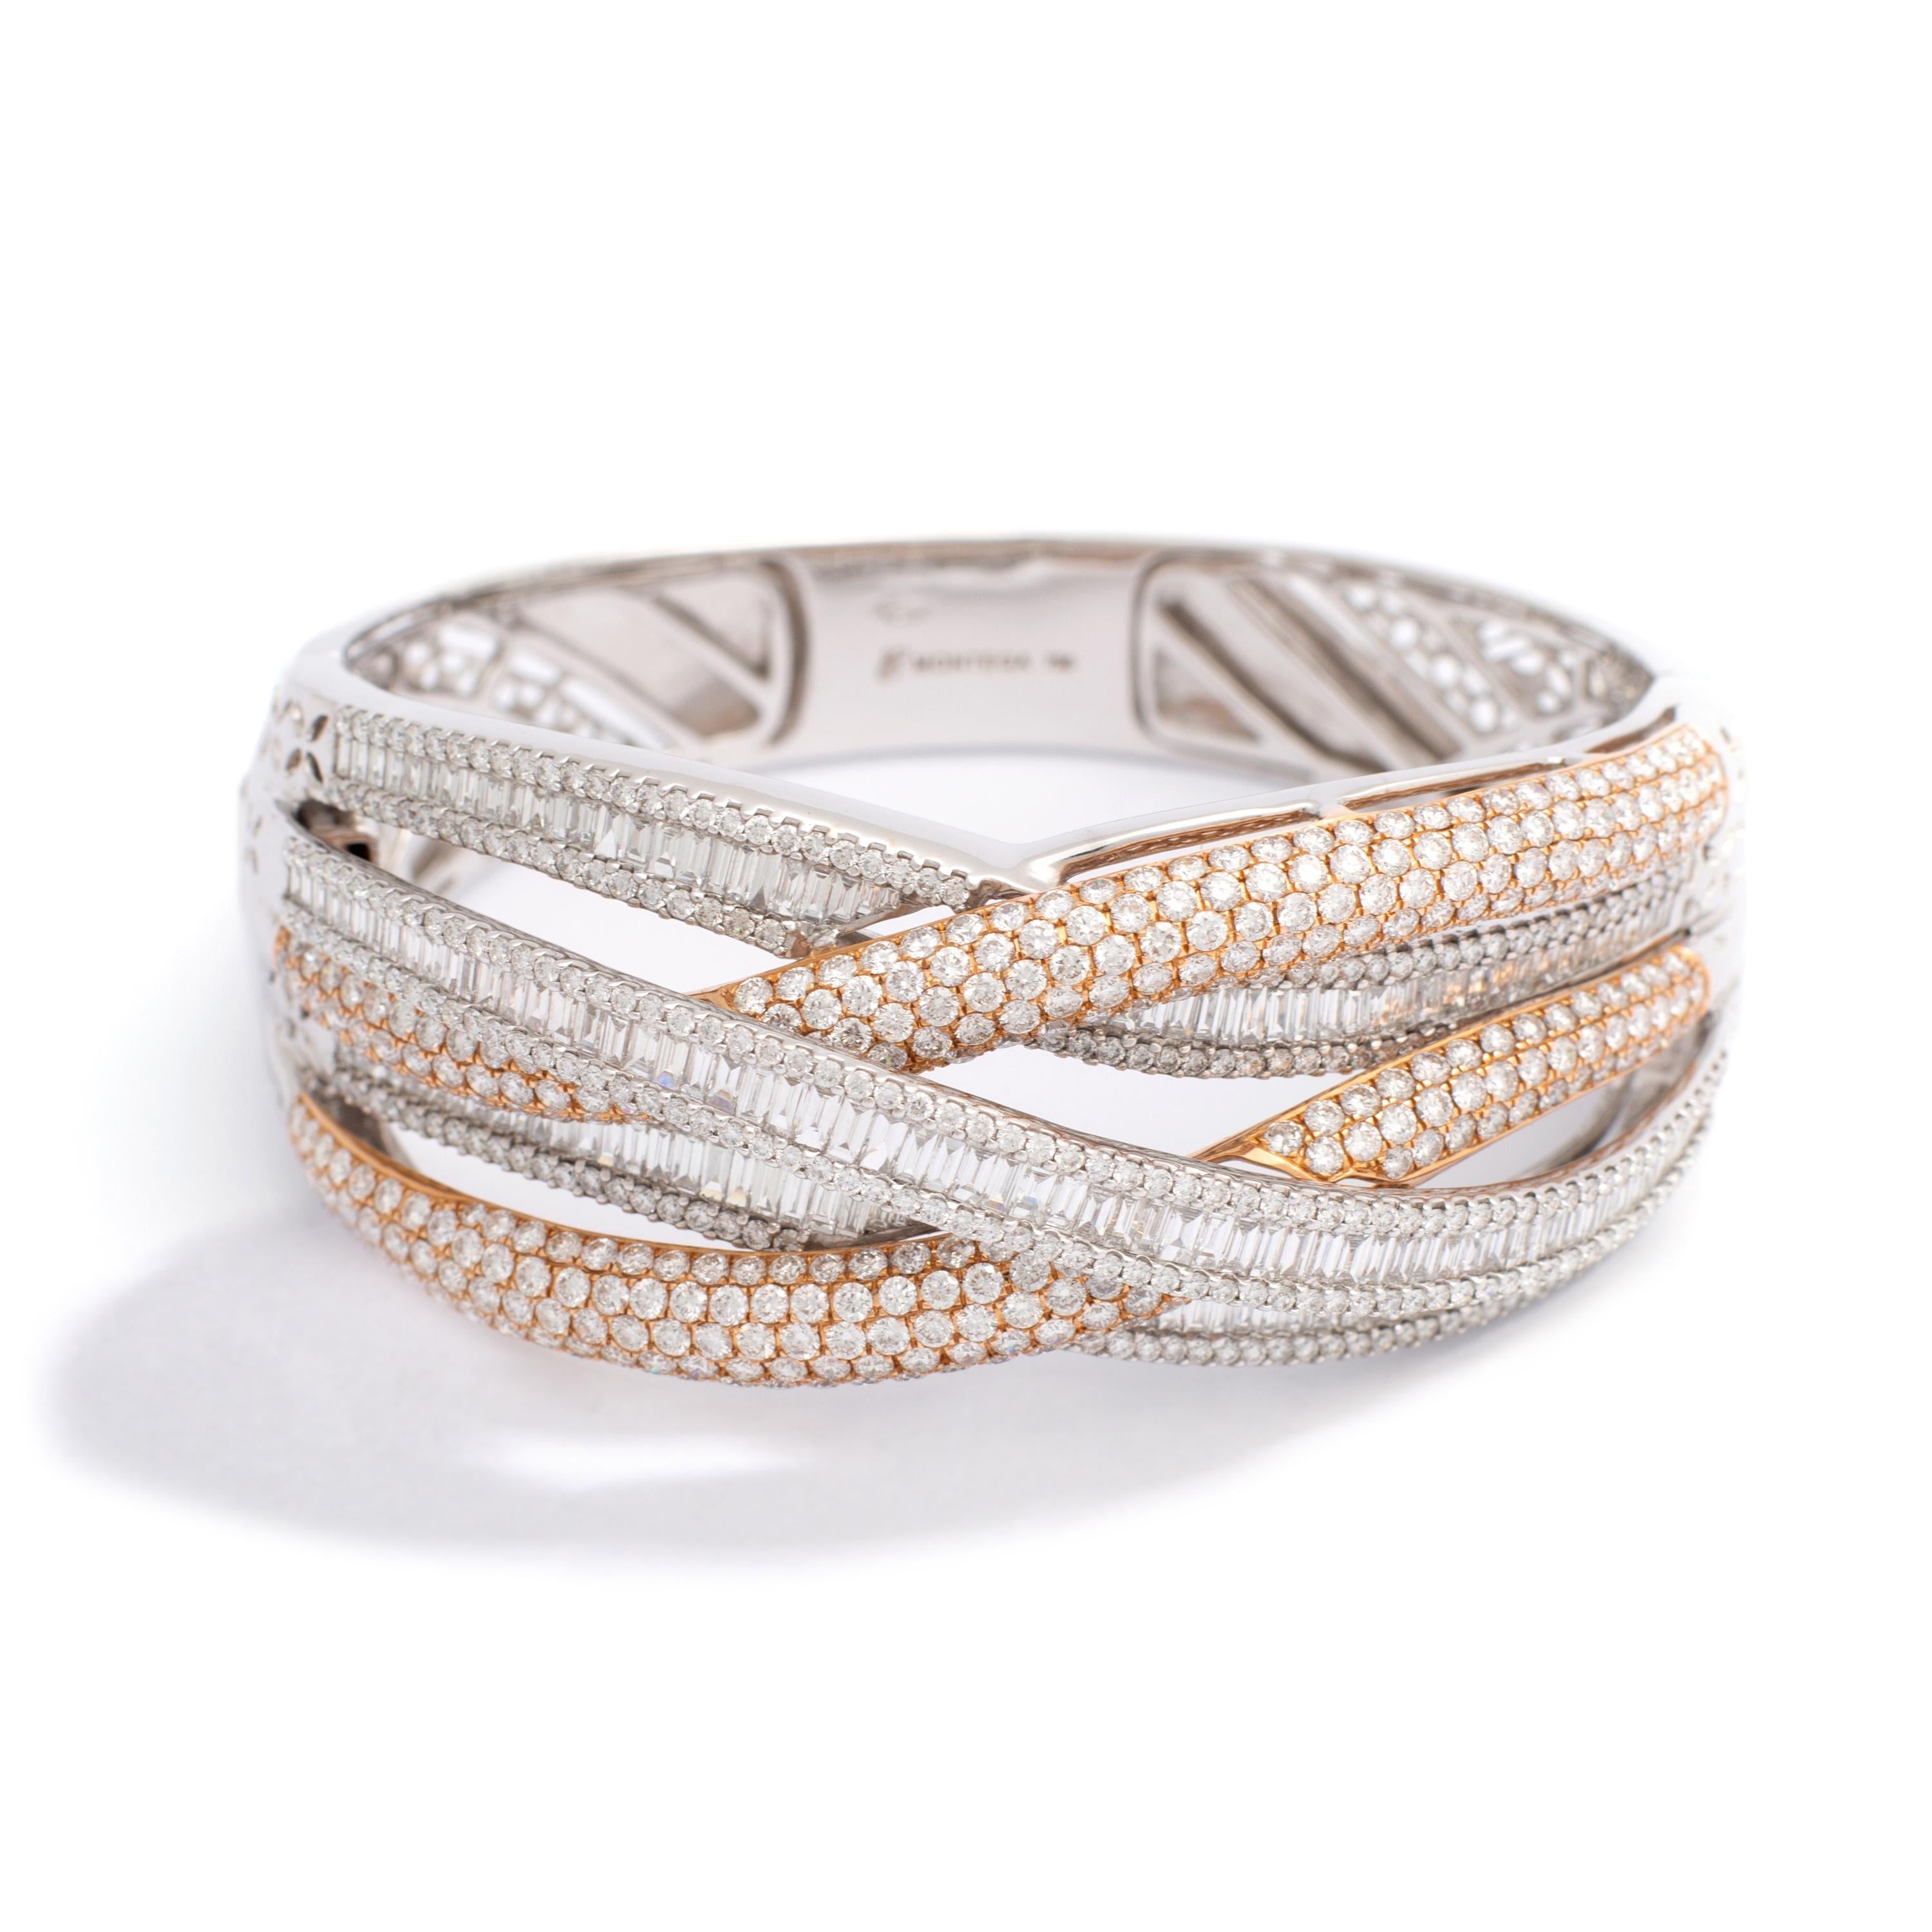 White gold 18k Bracelet set by 329 Diamonds 7.65 carats 210 baguettes Diamonds 5.05 carats.
